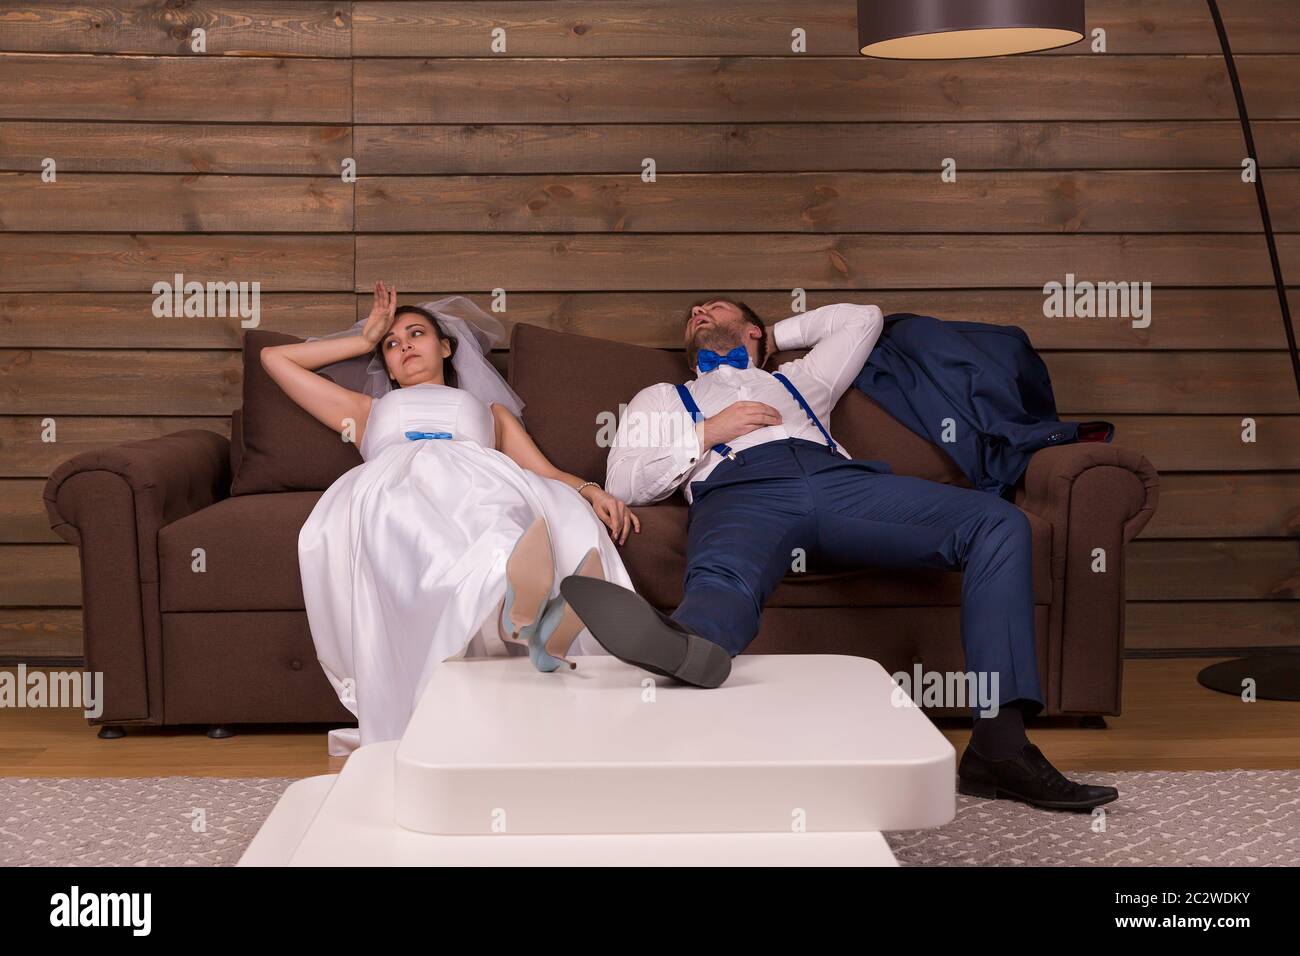 Cansado novio y novia descansar en cama después de la boda, de madera del interior de la habitación a fondo. Foto de stock